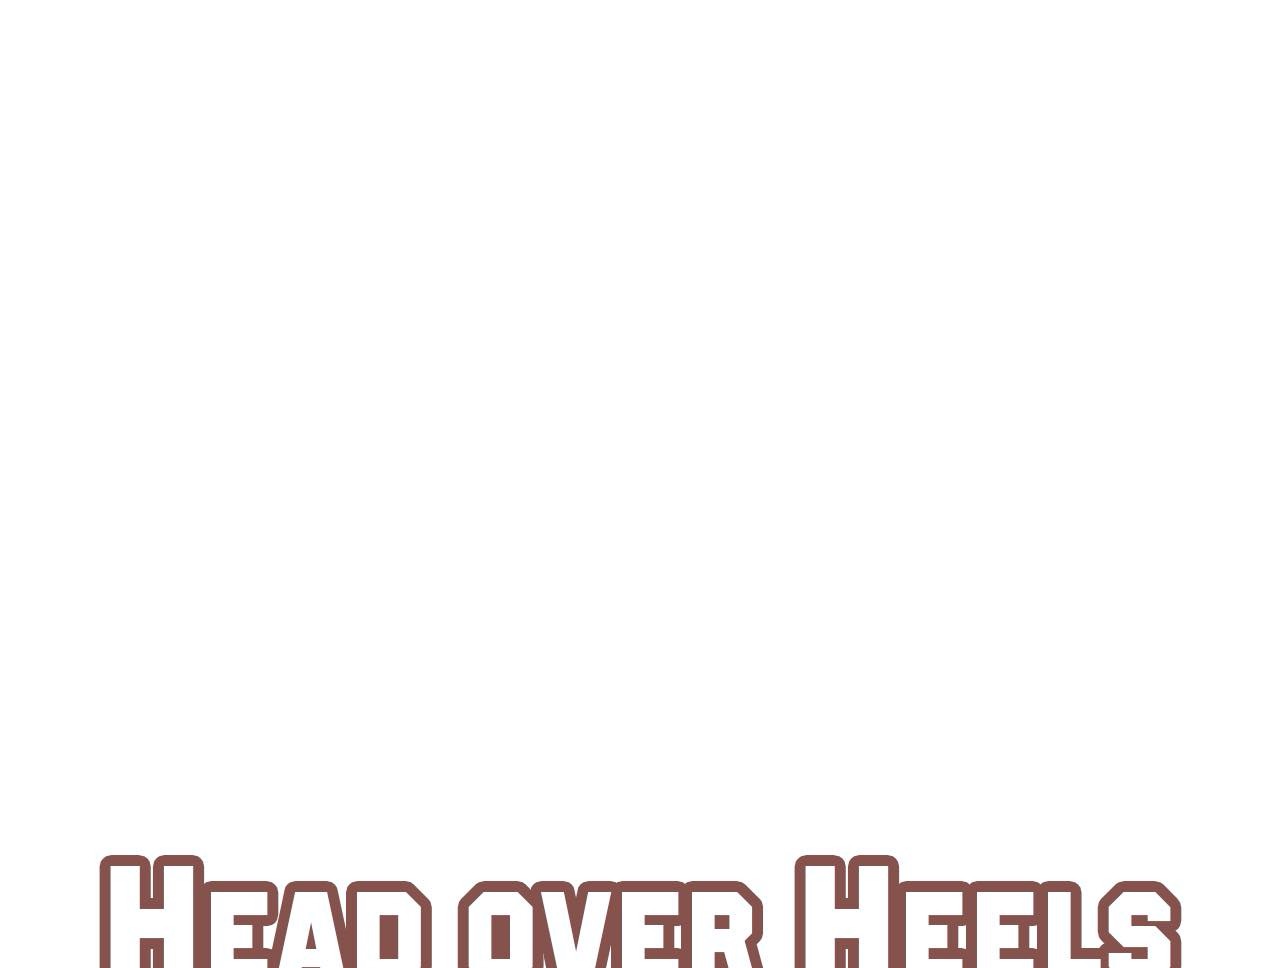 Head Over Heels image